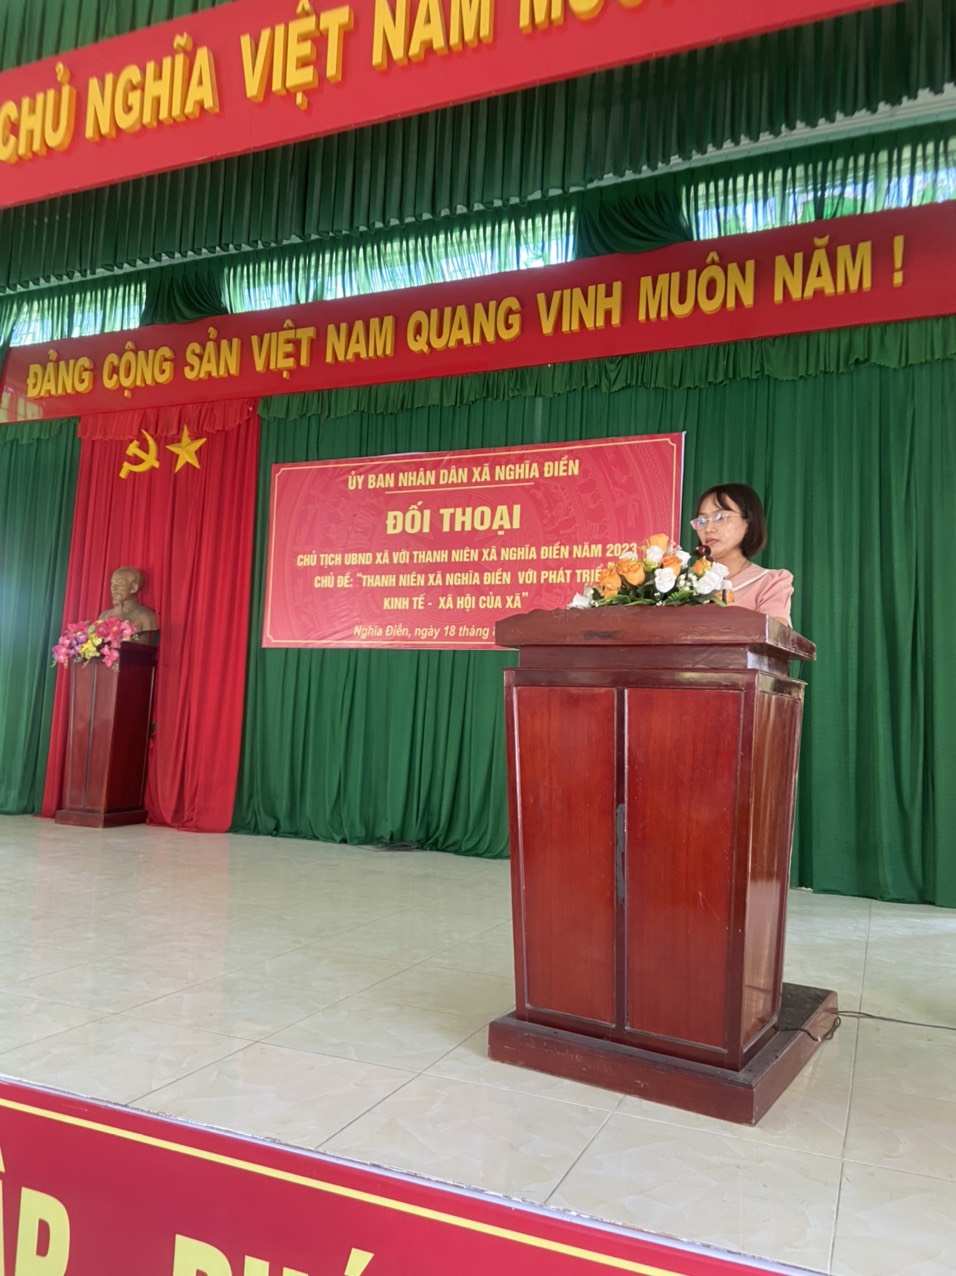 Đồng chí Nguyễn Thị Huệ, Công chức Văn phòng - Thống kê tuyên truyền dịch vụ công trực tuyến, chuyển đổi số